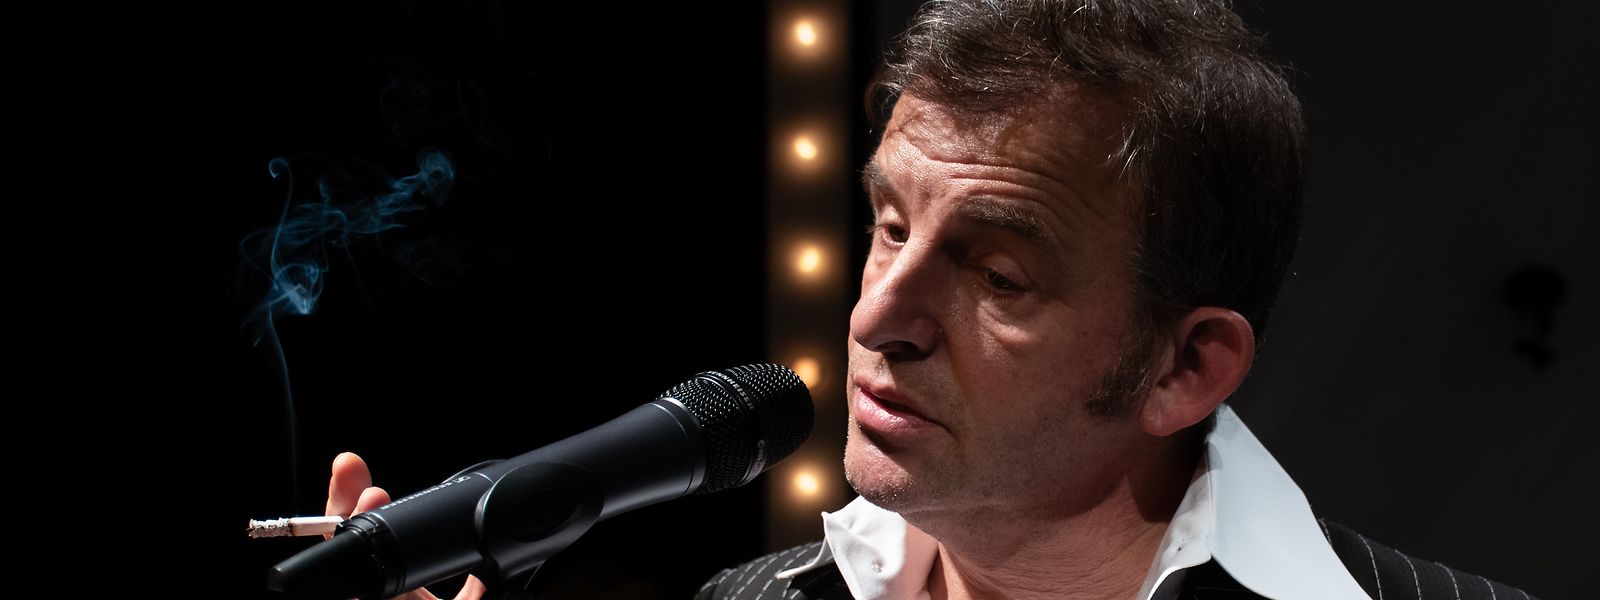 Der französische Schauspieler Dominique Horwitz auf den Spuren der Legende Serge Gainsbourg ...